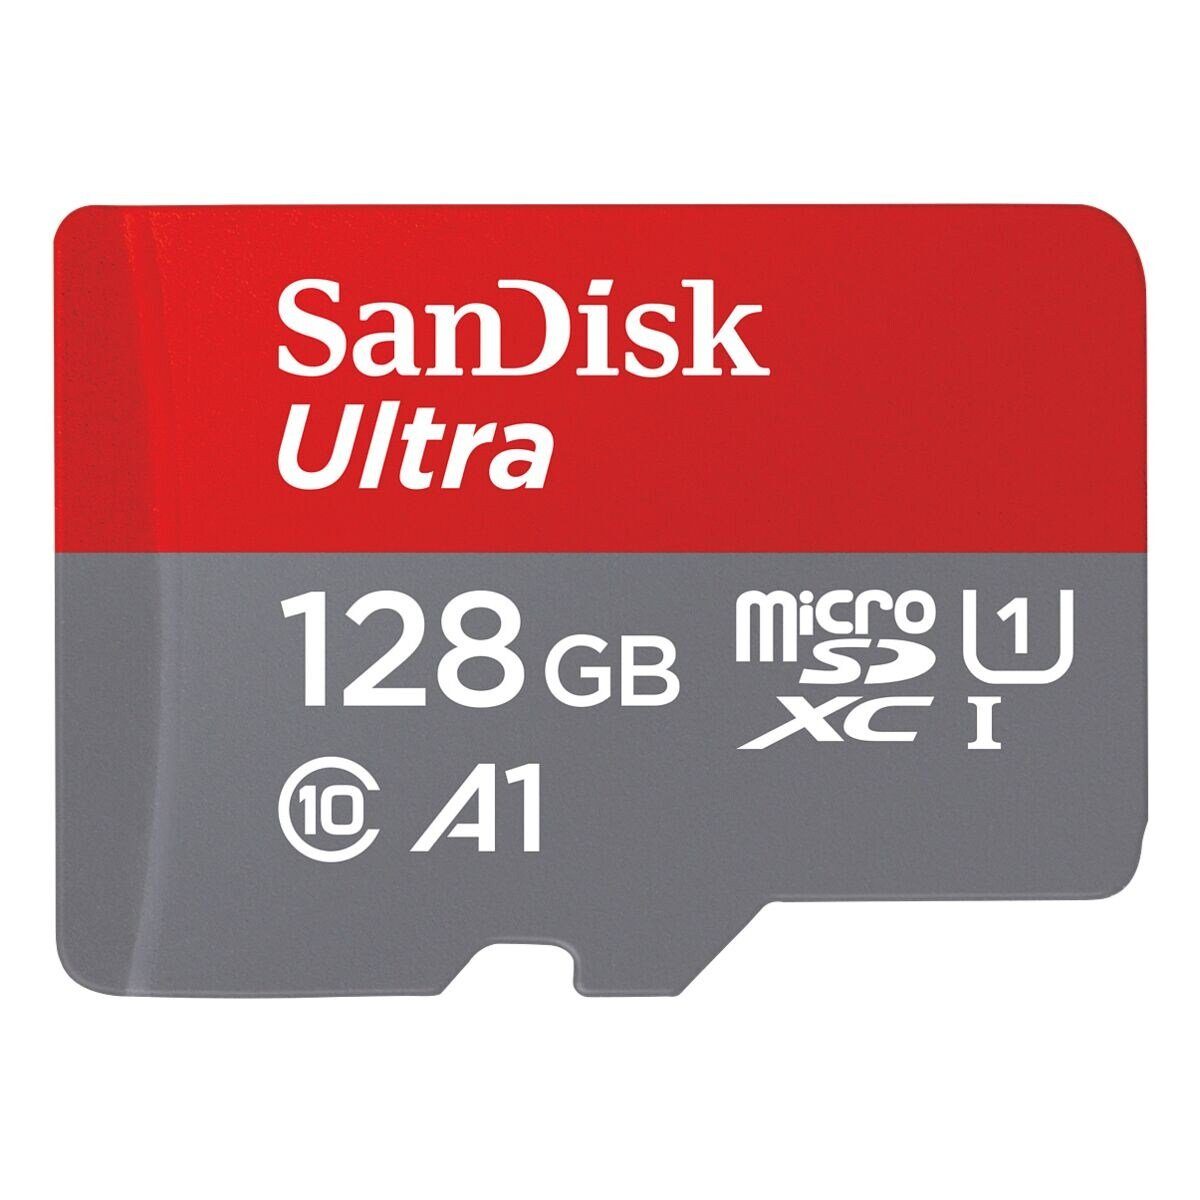 Sandisk Ultra Speicherkarte (128 GB, 140 MB/s Lesegeschwindigkeit, inklusive SD-Adapter)